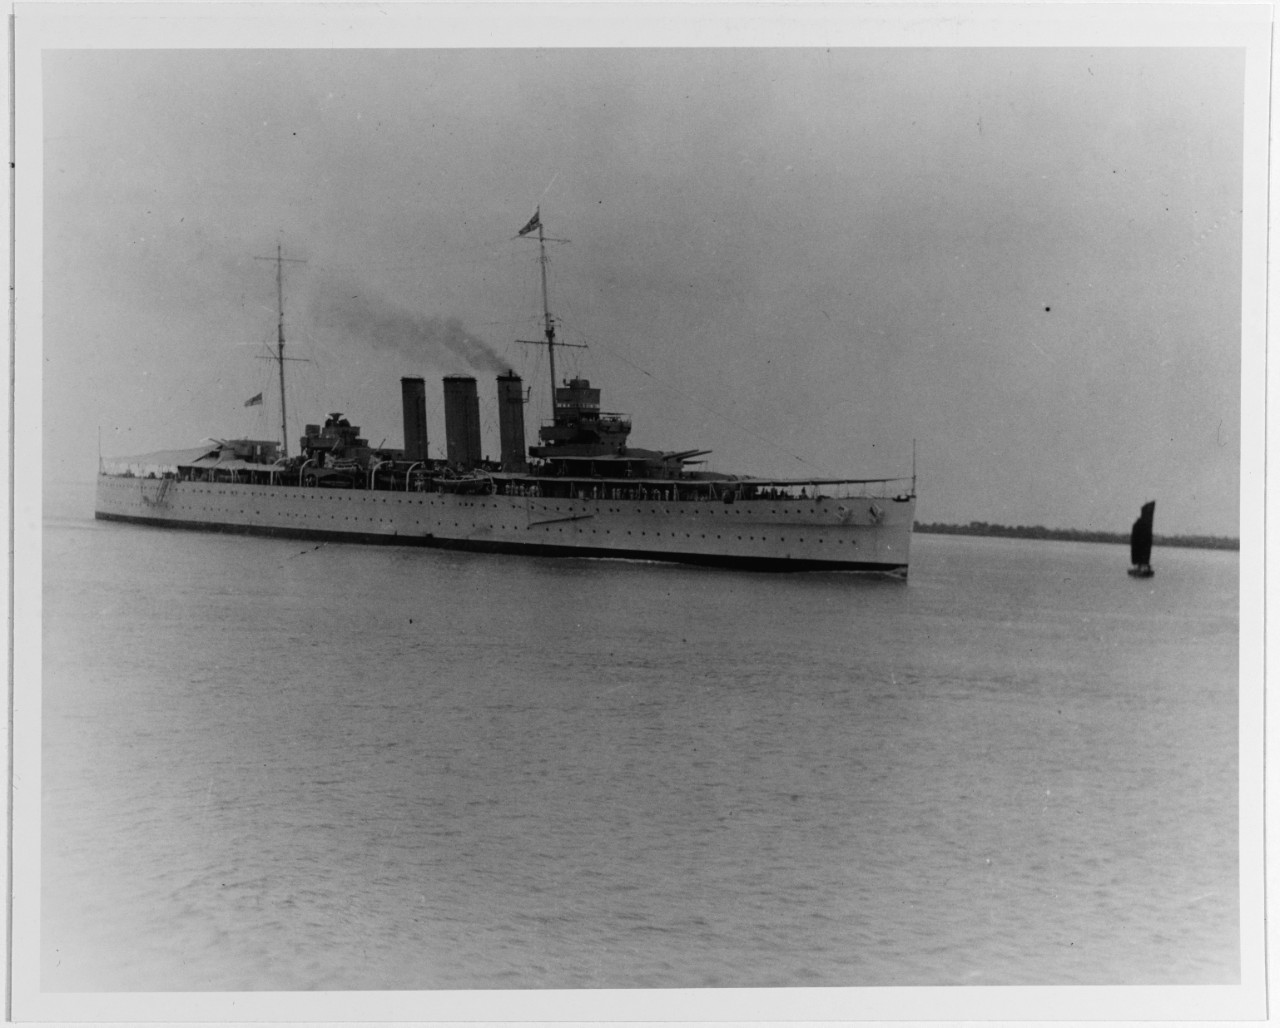 SUFFOLK (British heavy cruiser, 1925)